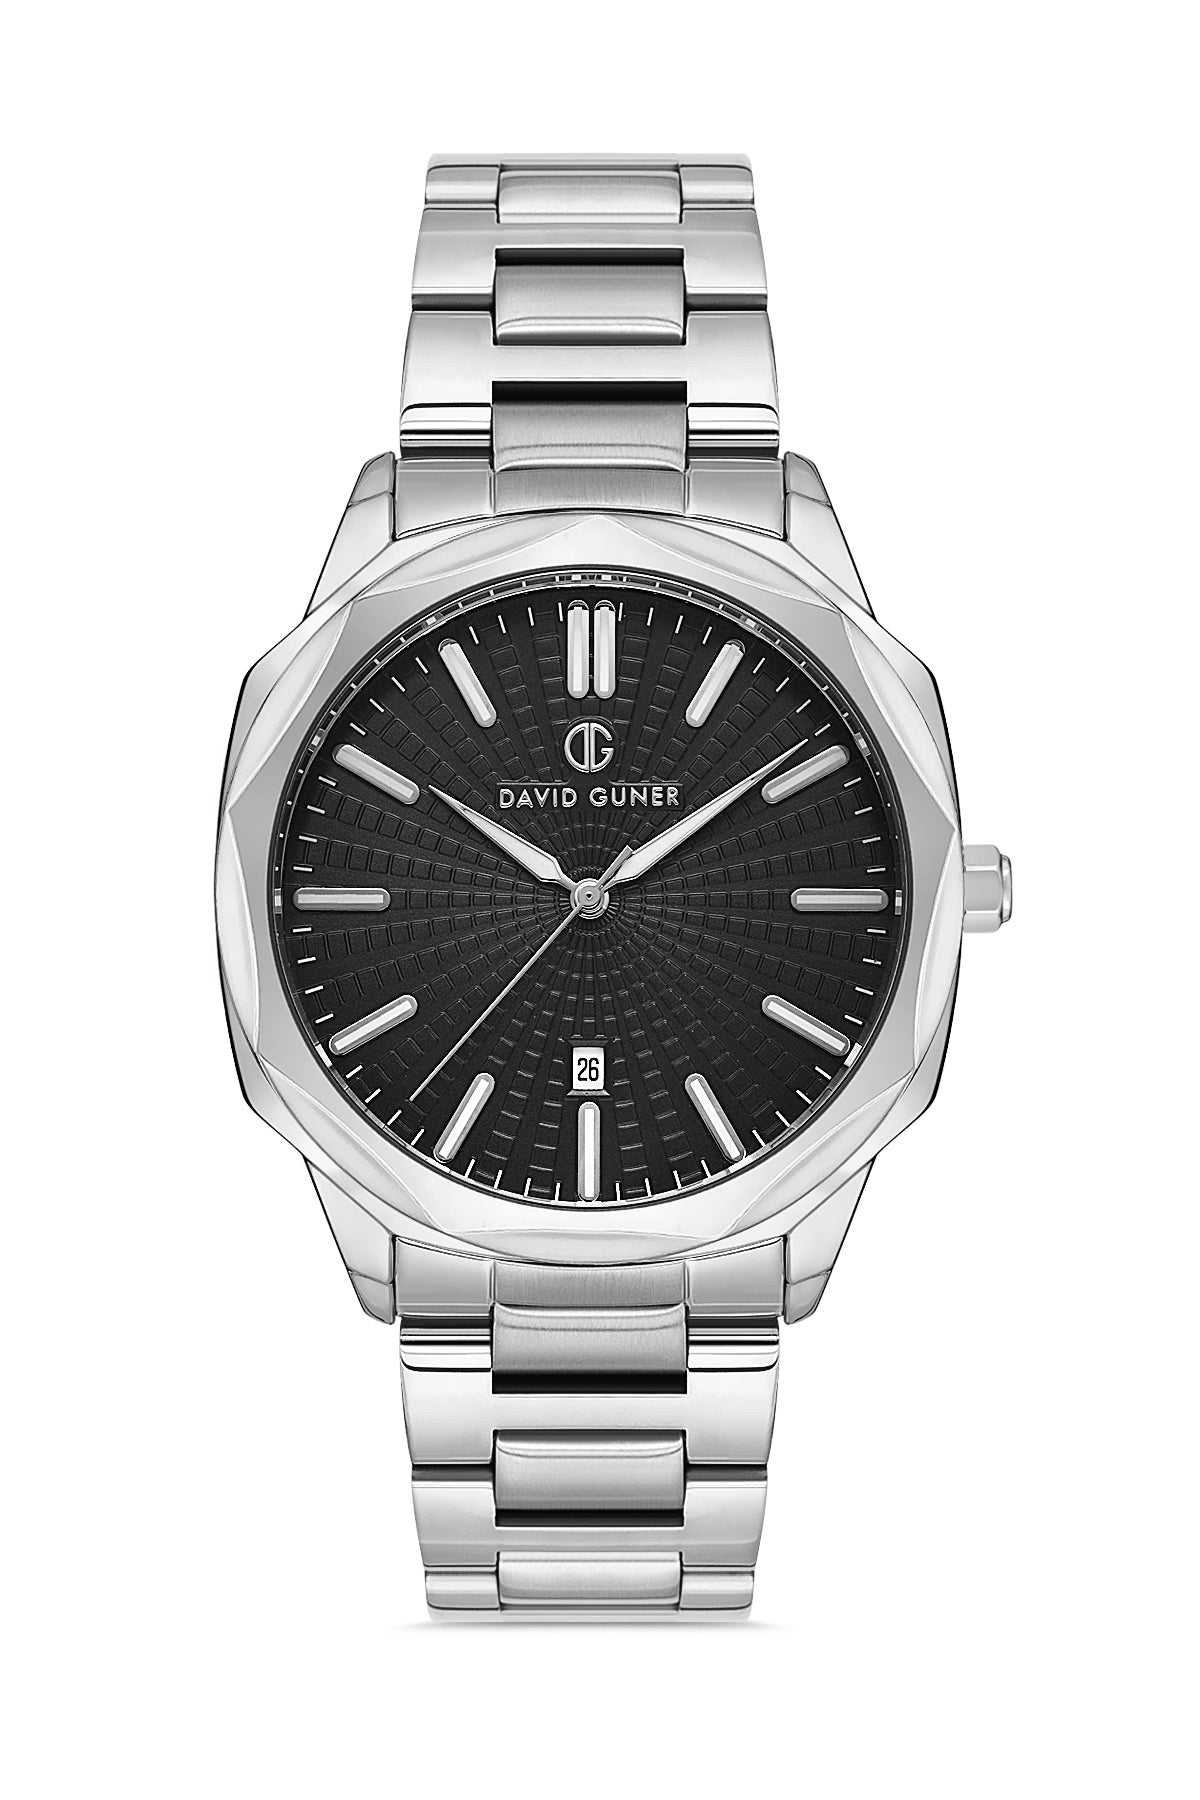 David Guner Silver Plated Black Dial Calendar Men's Wristwatch